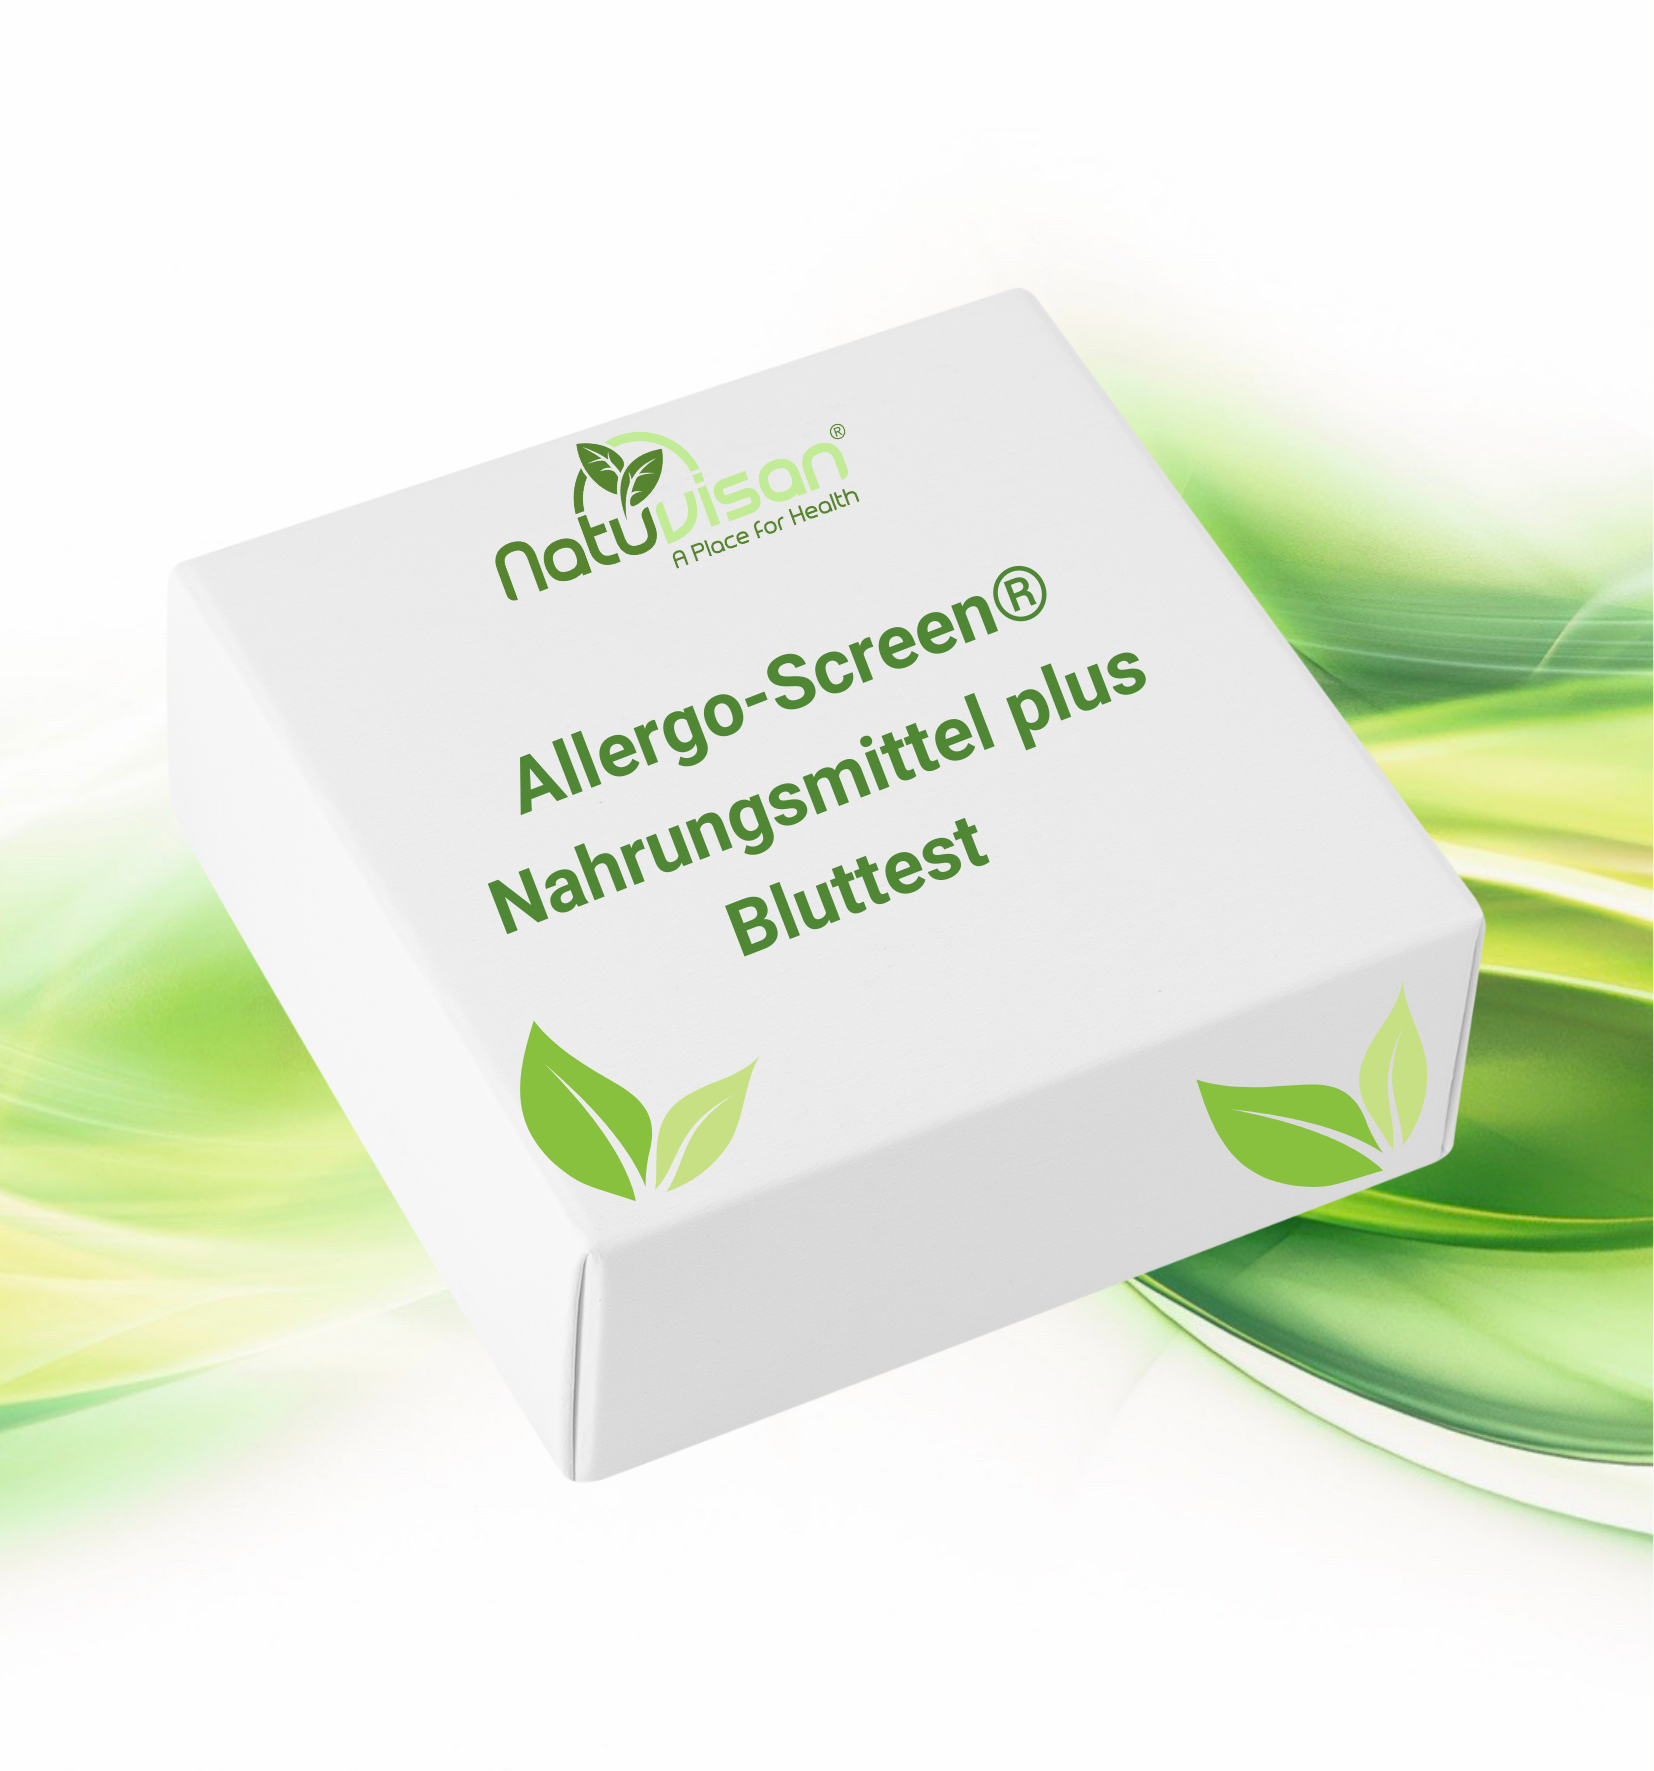 Allergo-Screen® Nahrungsmittel plus Bluttest - 54 Allergene wie Nahrungsmittel, Tiere, Milben, Pilze und Pollen - Testkit